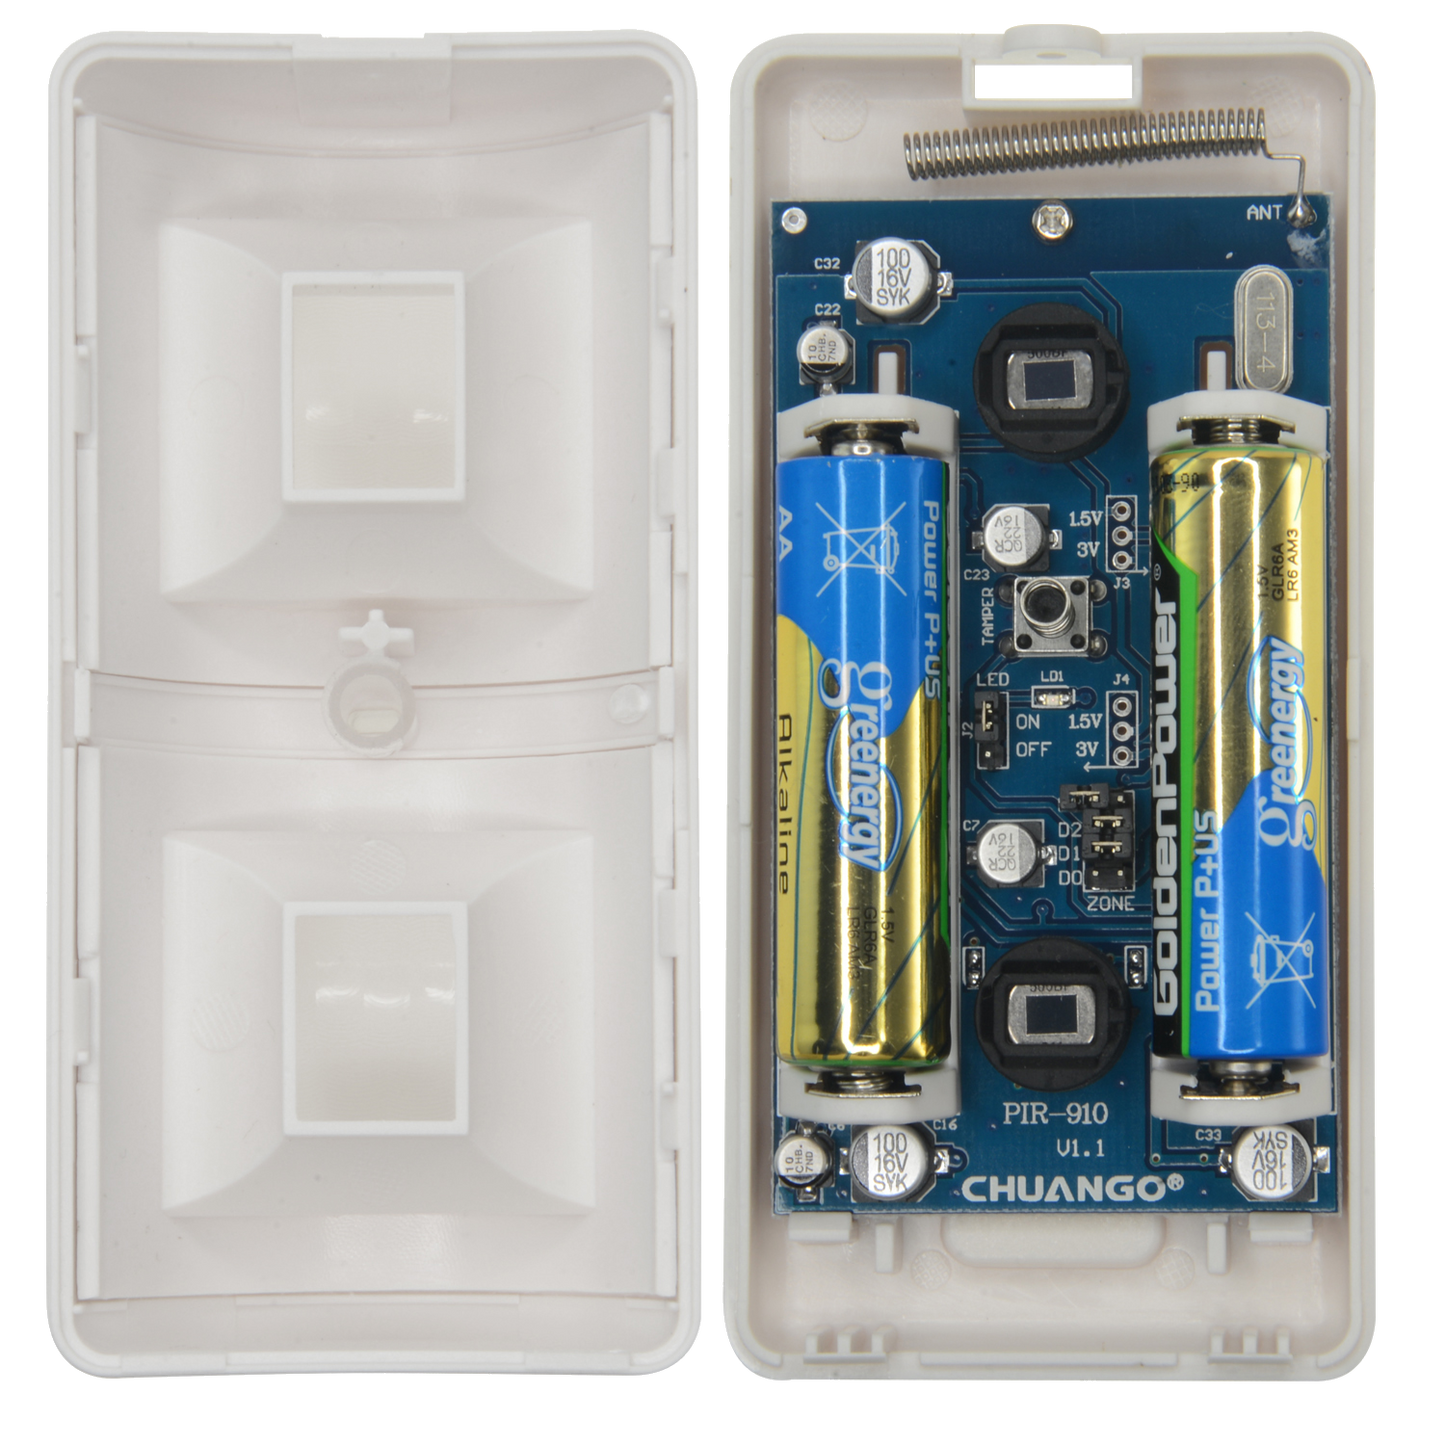 Rilevatore PIR anti animali - Wireless - Antenna interna - Indicatore LED batteria scarica - Intervallo rilevamento 8 m / 110º - Alimentazione 2 batterie AA 1.5 V LR6